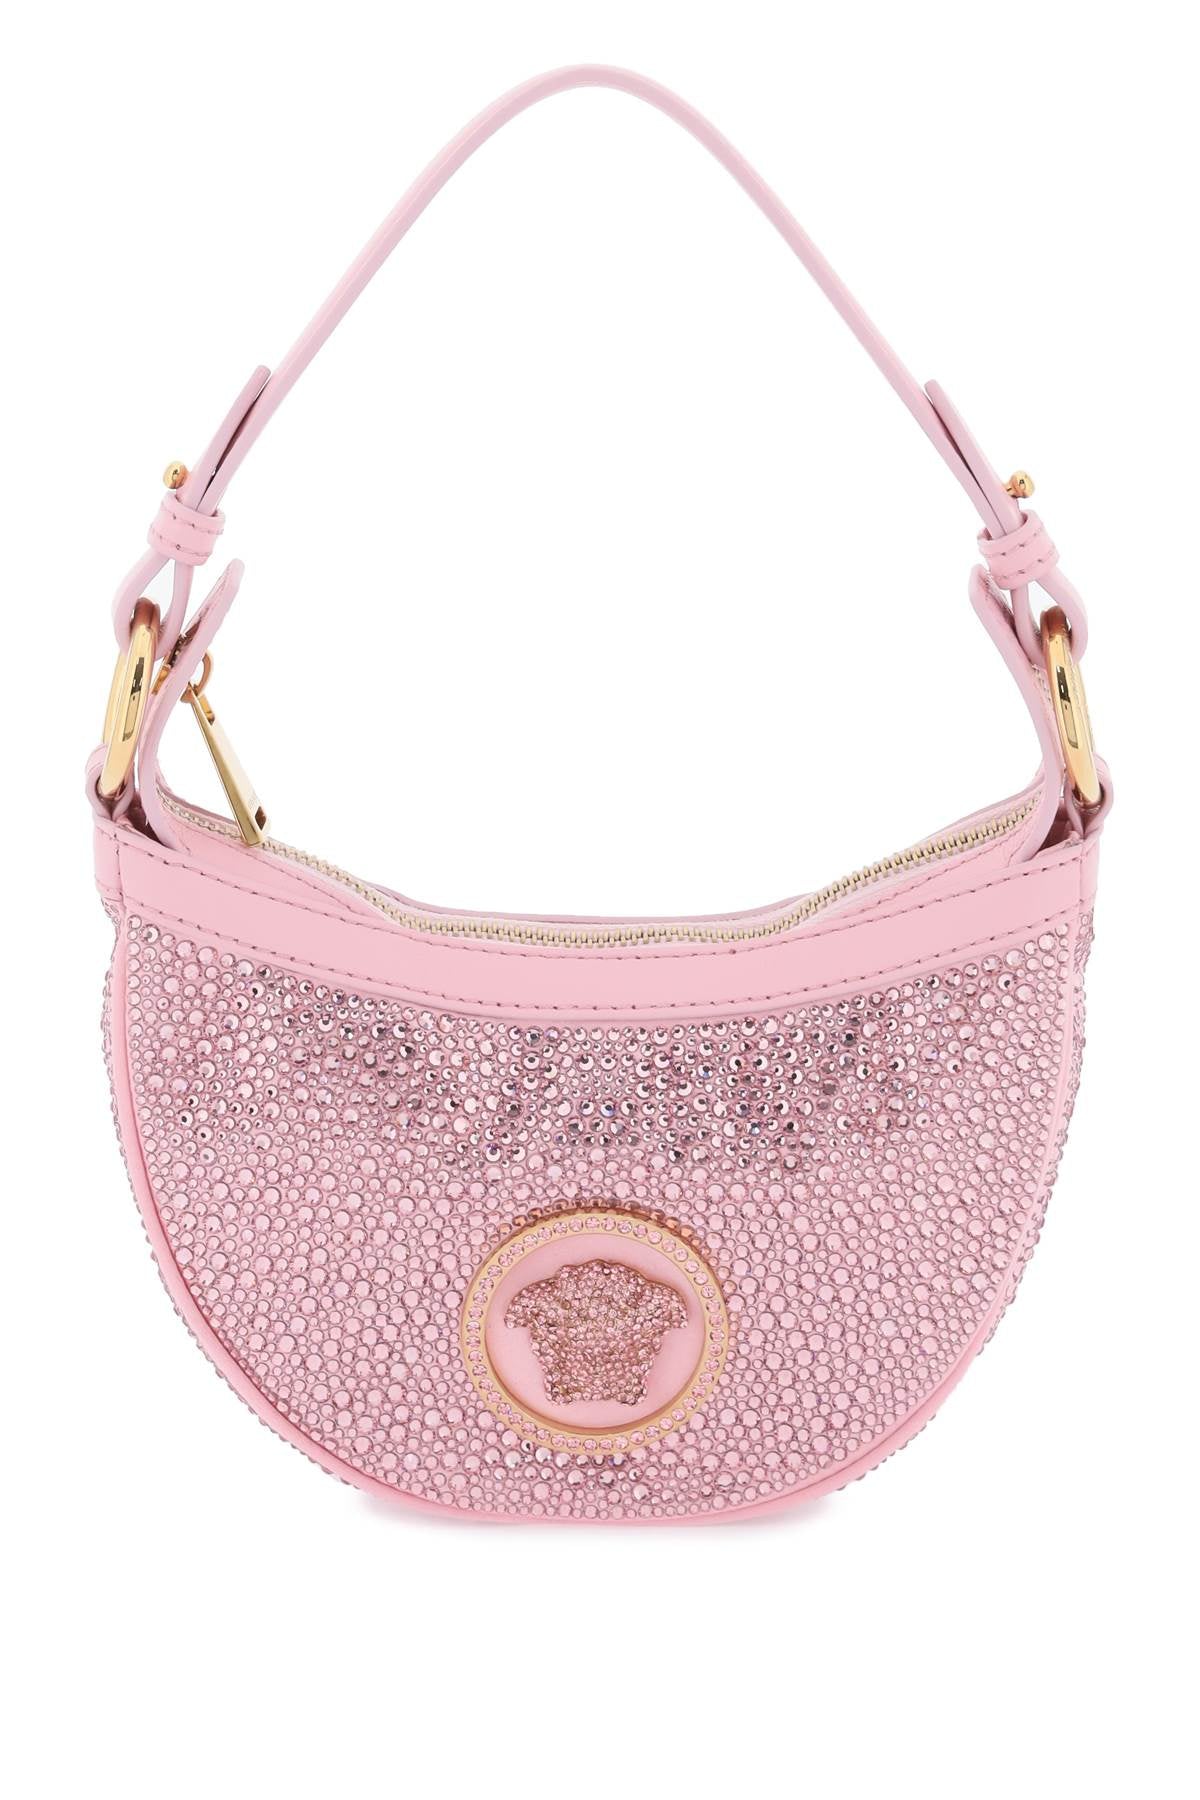 Túi xách nữ hàng hiệu màu hồng tuyệt đẹp với các viên pha lê và biểu tượng Medusa nổi tiếng của nhà thiết kế hàng đầu